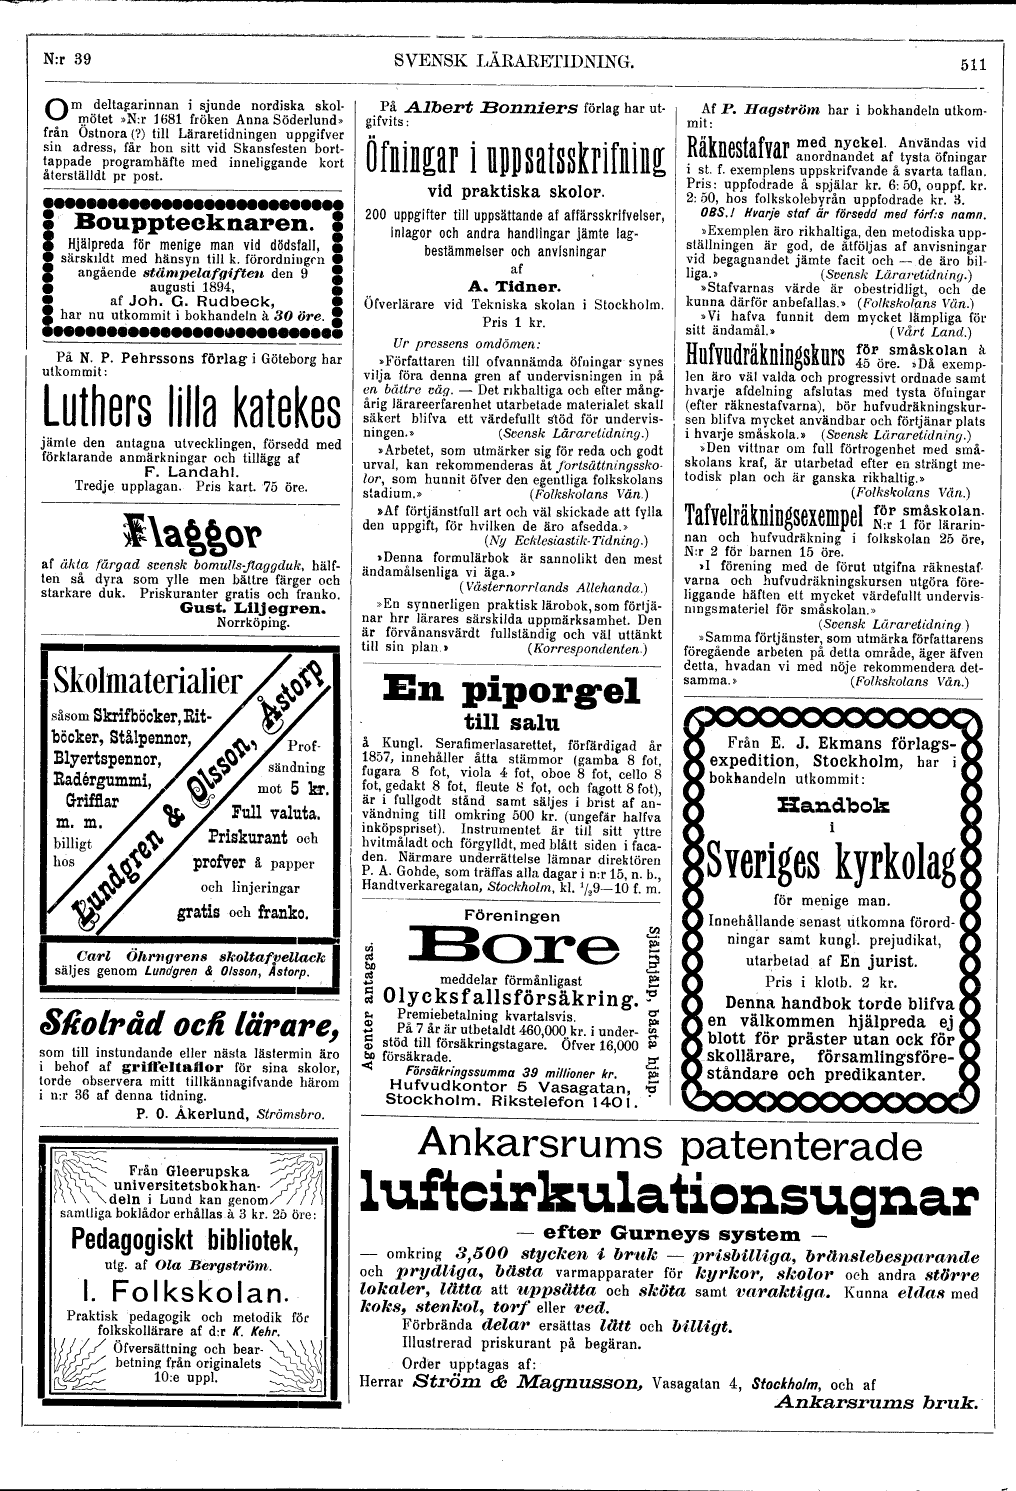 511 (Svensk Läraretidning / 14:e årg. 1895)